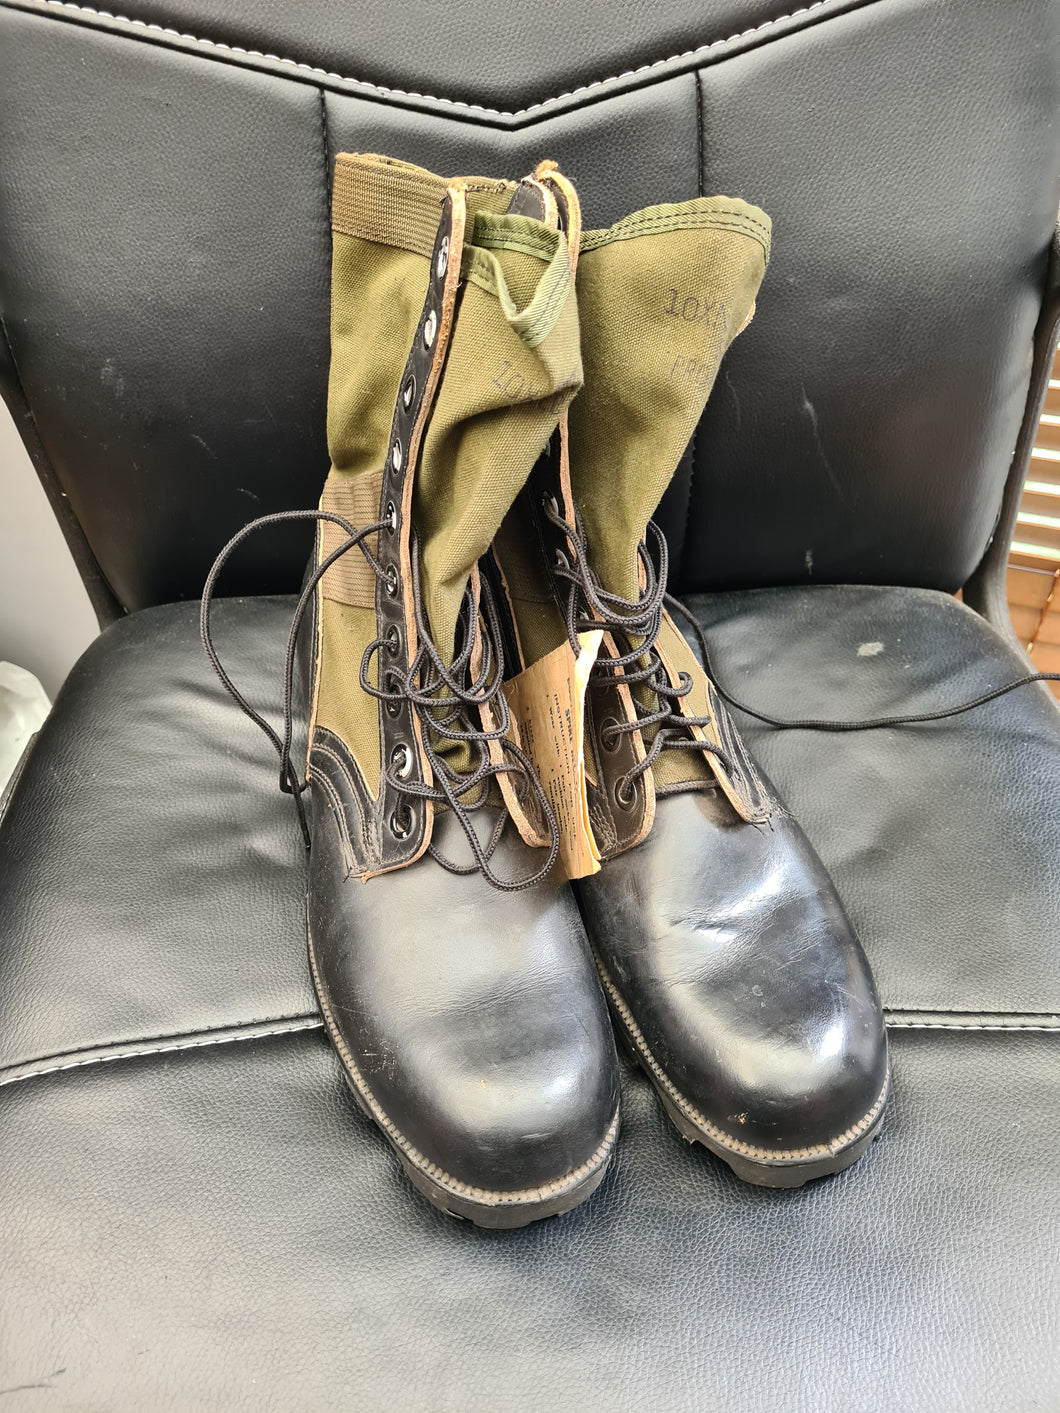 US Vietnam war un-issued Jungle boots